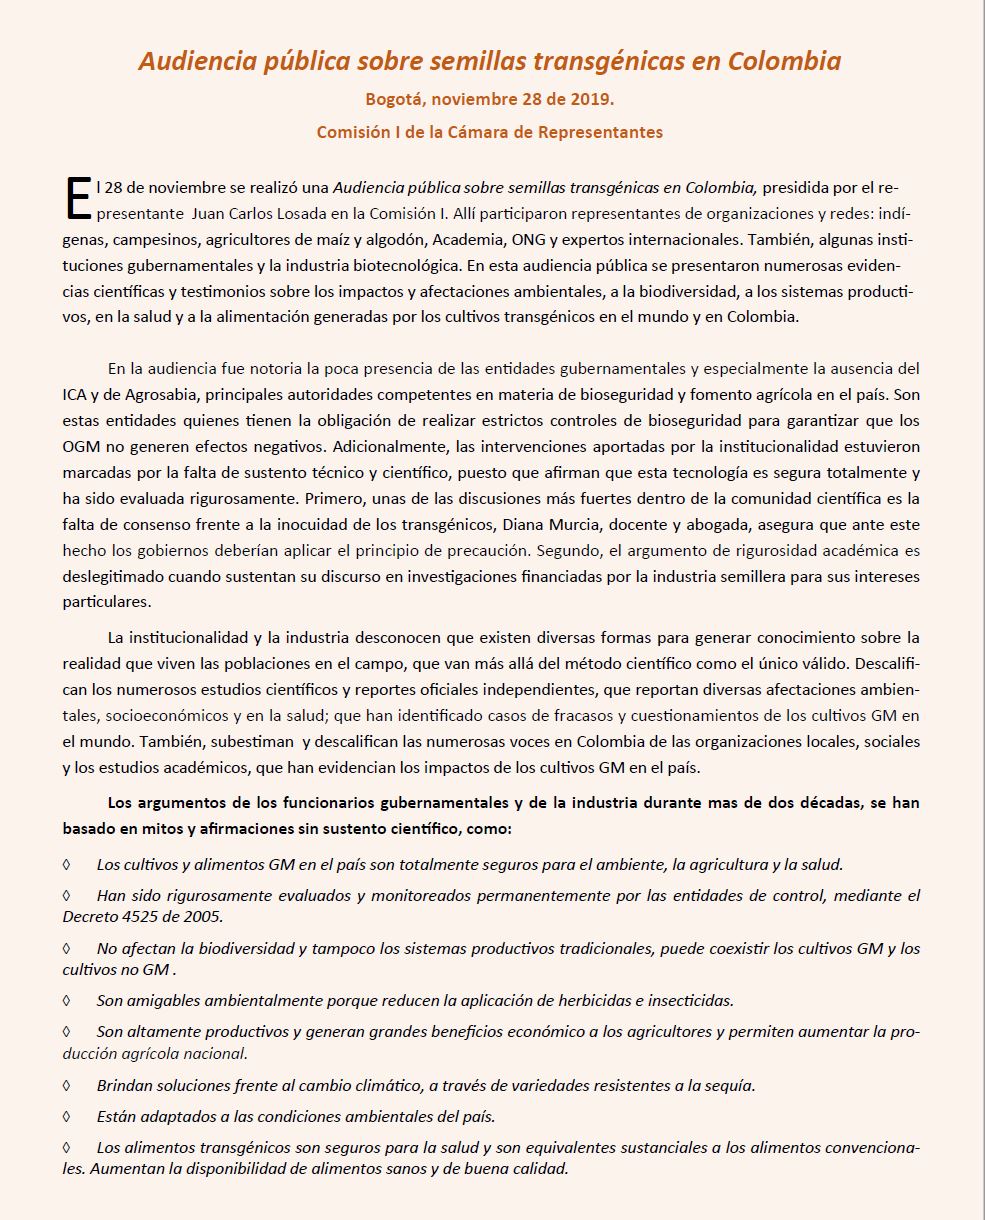 Grafica alusiva a Audiencia pública sobre la prohibición de semillas transgénicas en Colombia. Noviembre 28 de 2019. 